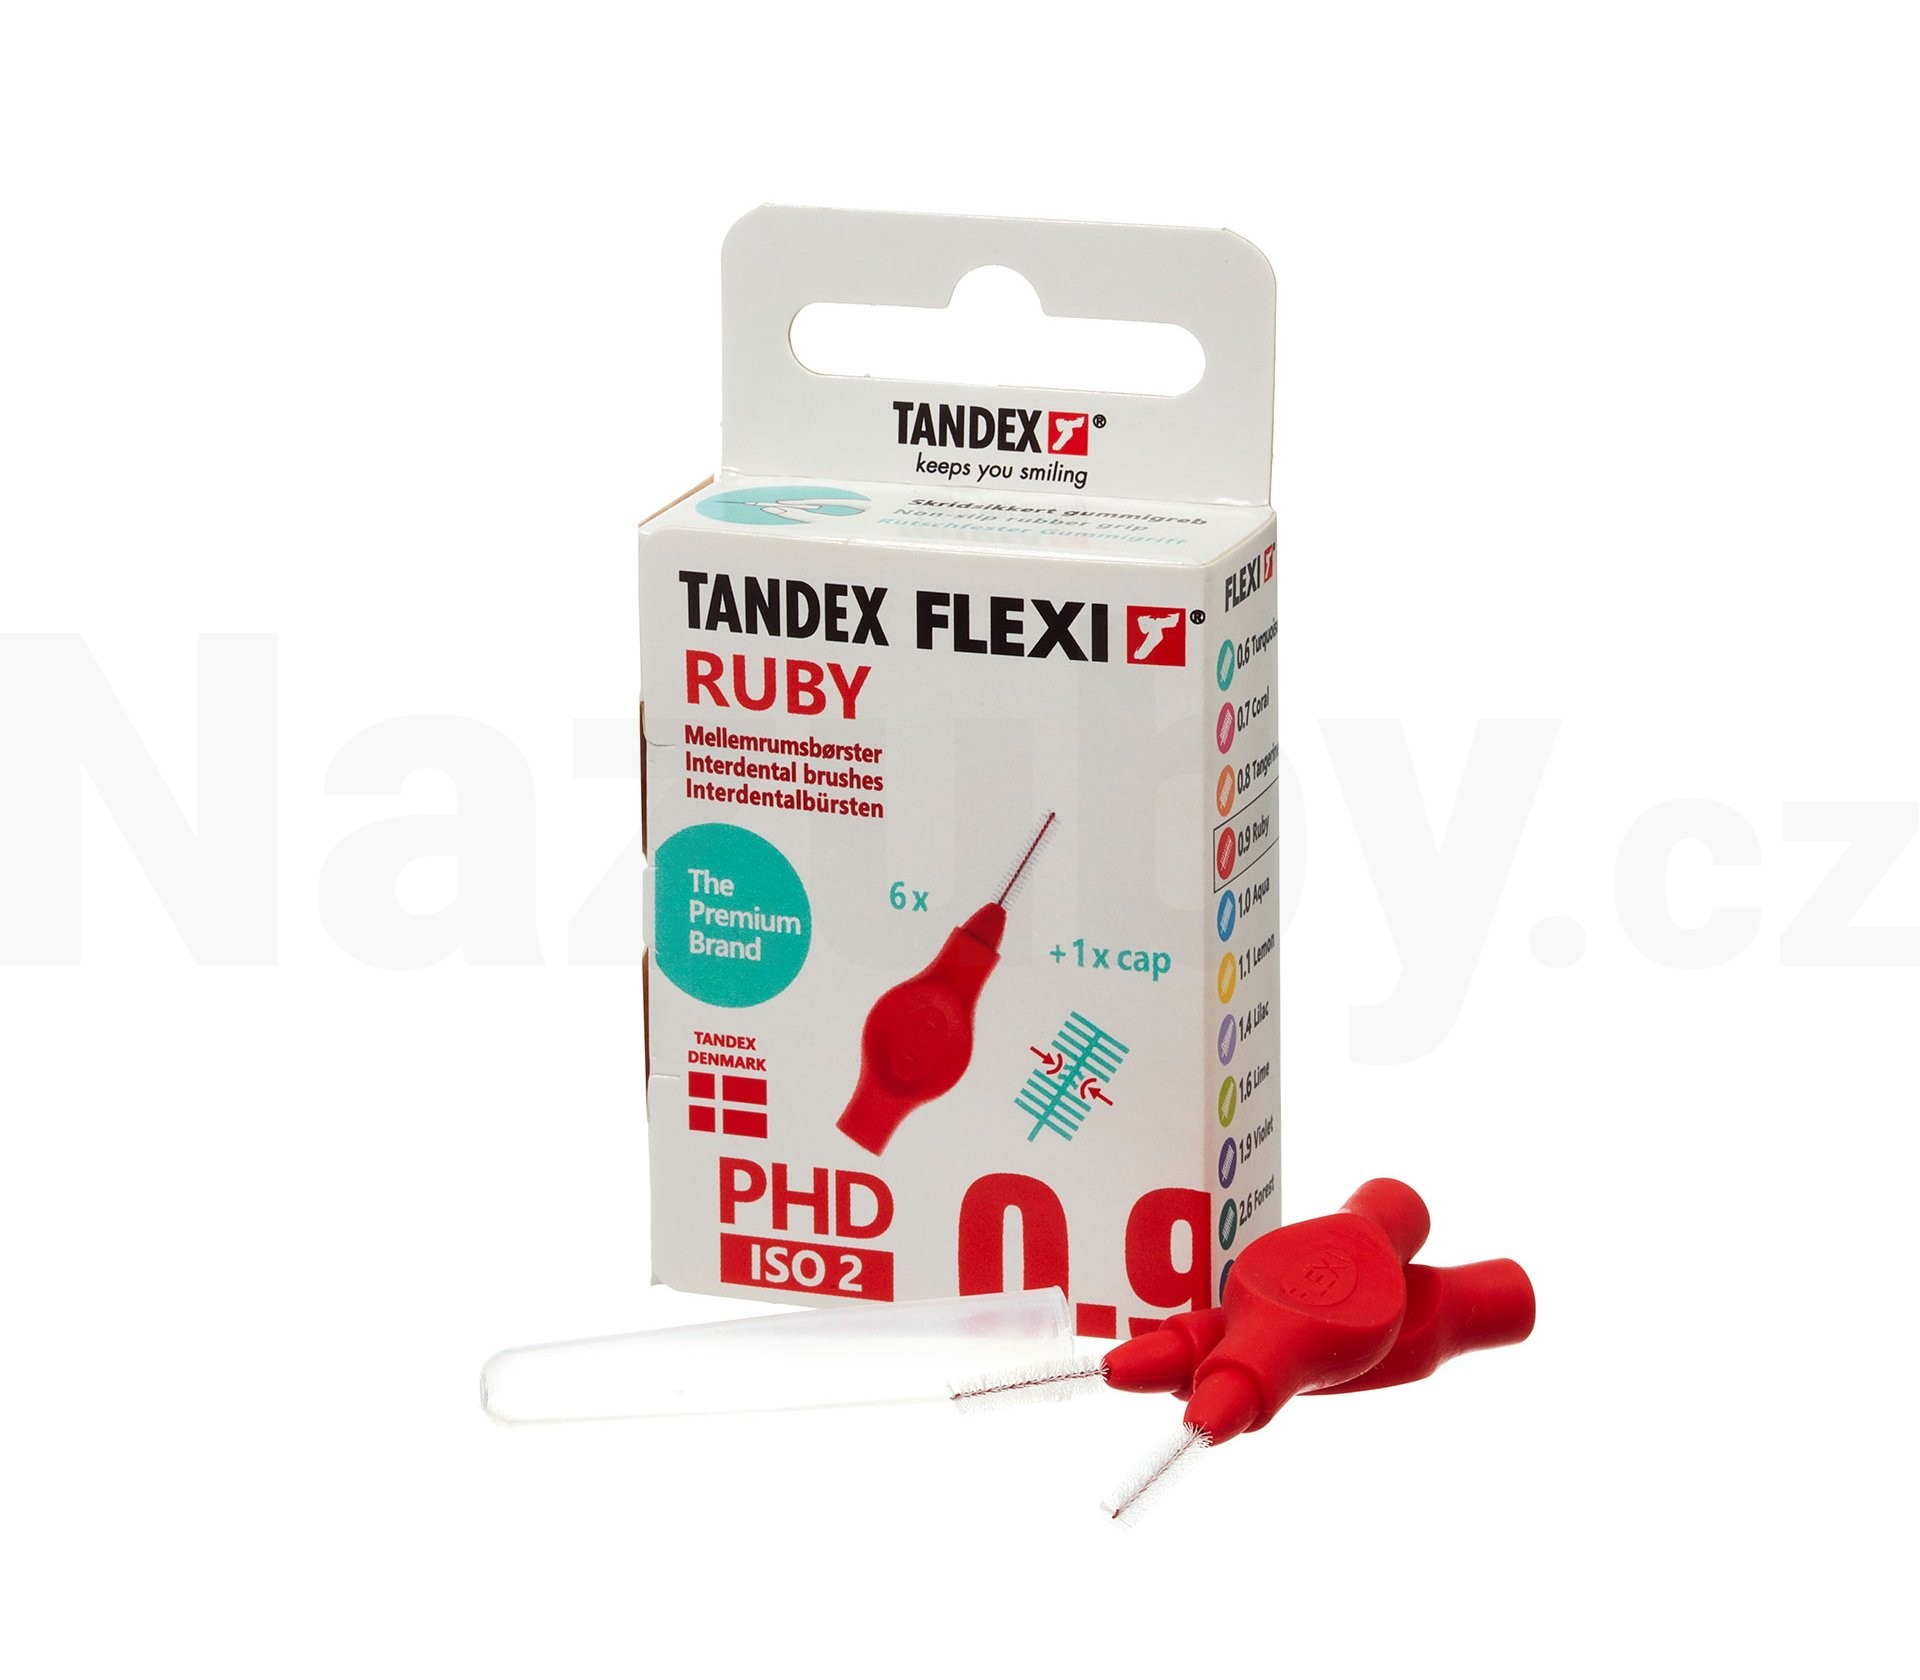 Tandex Flexi 0,9 Ruby mezizubní kartáček 6 ks